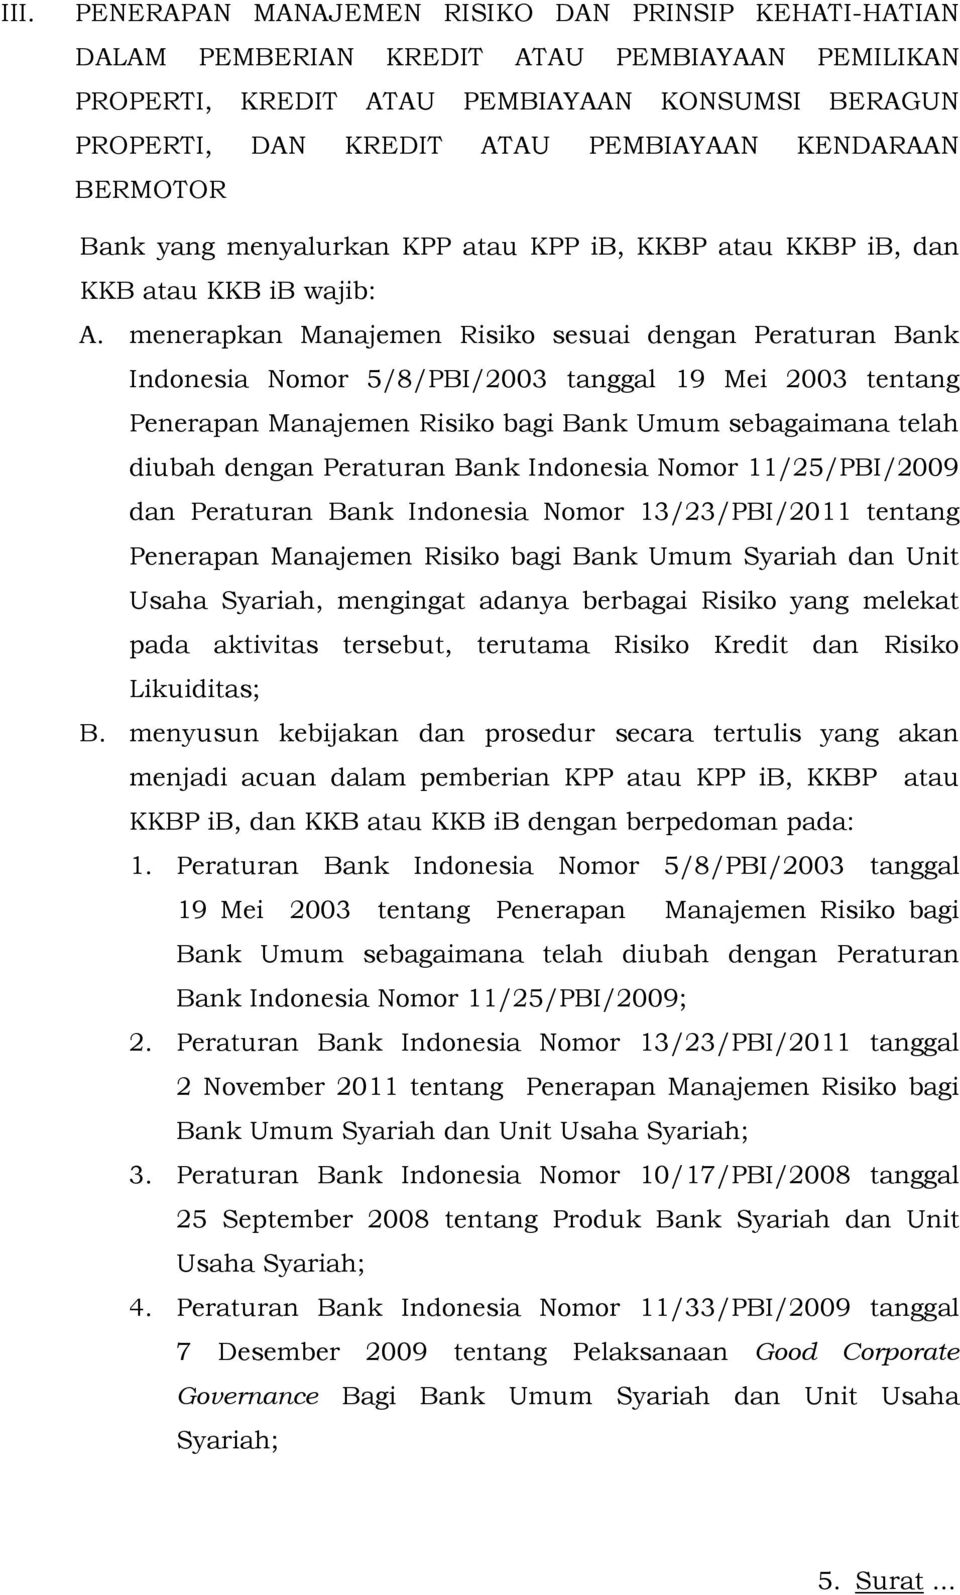 menerapkan Manajemen Risiko sesuai dengan Peraturan Bank Indonesia Nomor 5/8/PBI/2003 tanggal 19 Mei 2003 tentang Penerapan Manajemen Risiko bagi Bank Umum sebagaimana telah diubah dengan Peraturan